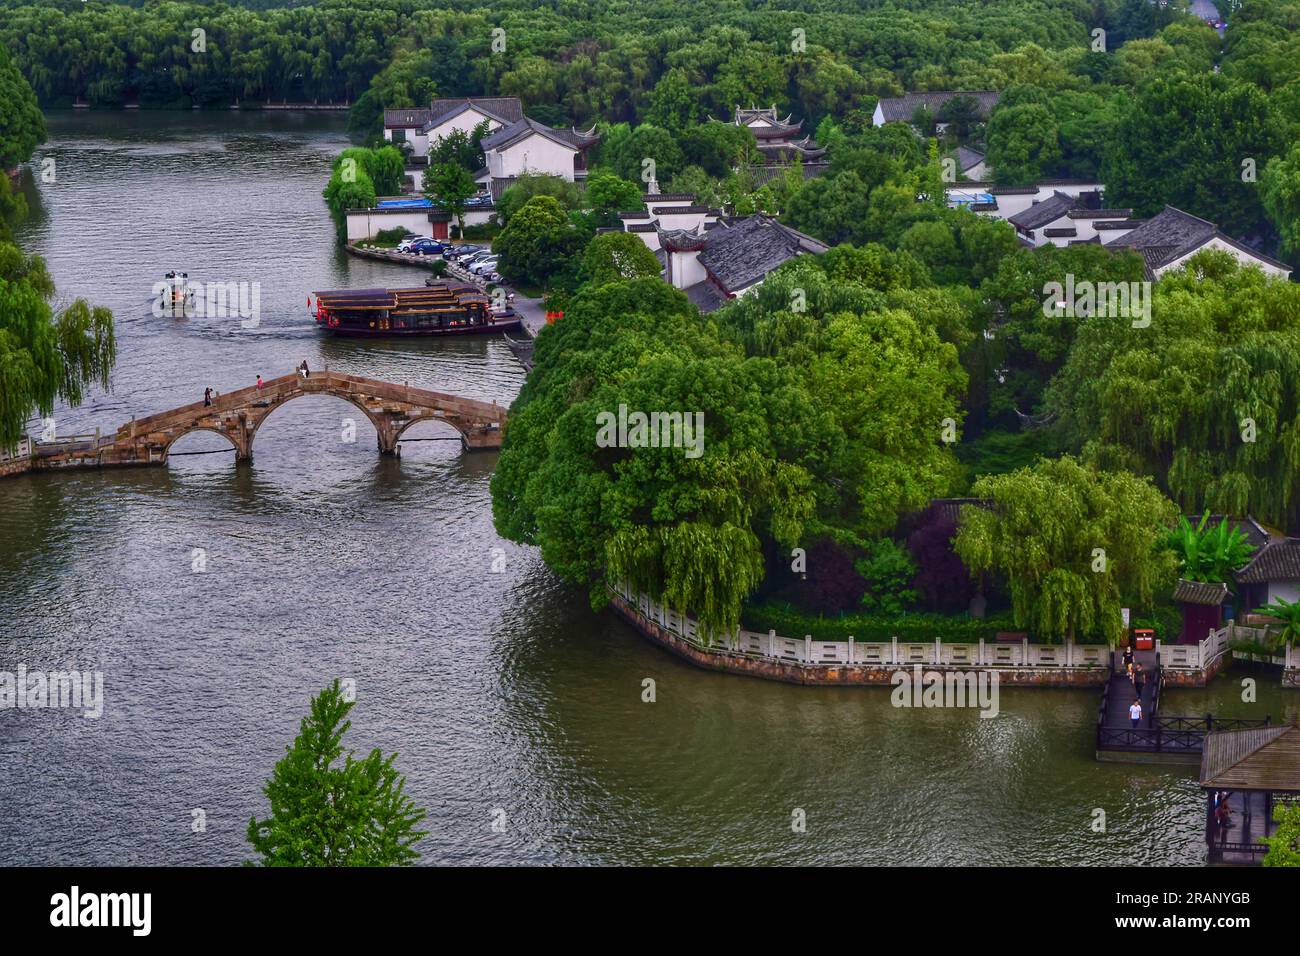 Erkunden Sie die malerische Aussicht auf einen ruhigen Fluss in China, aus verschiedenen Winkeln gefangen, unter dem ruhigen Schattenlicht der freien Natur Stockfoto